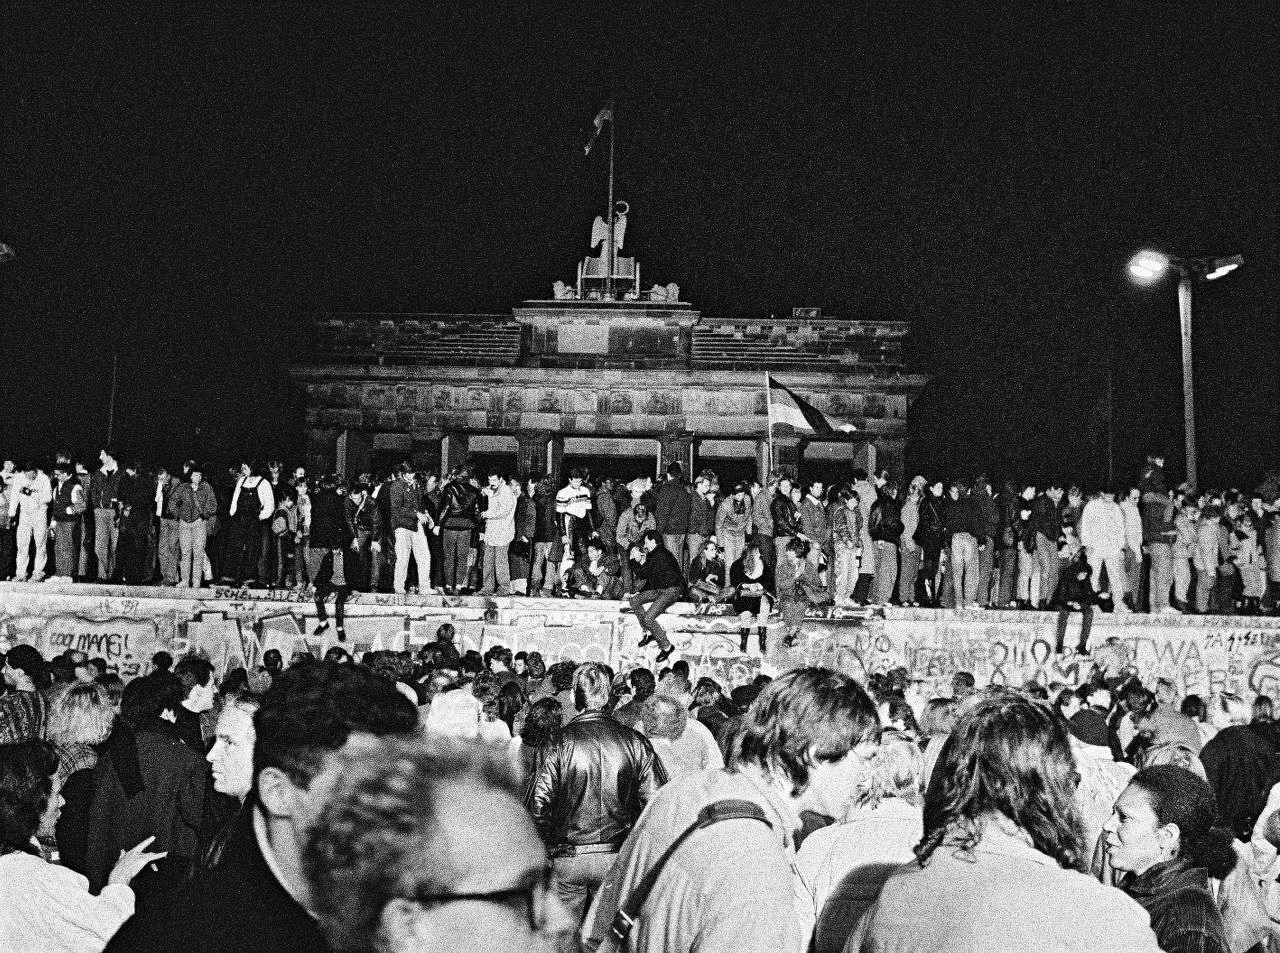 Fotos von feiernden Menschen auf und vor der Berliner Mauer bei Nacht. Zentral im Bild ist das Brandenburger Tor hinter der Mauer zu sehen.